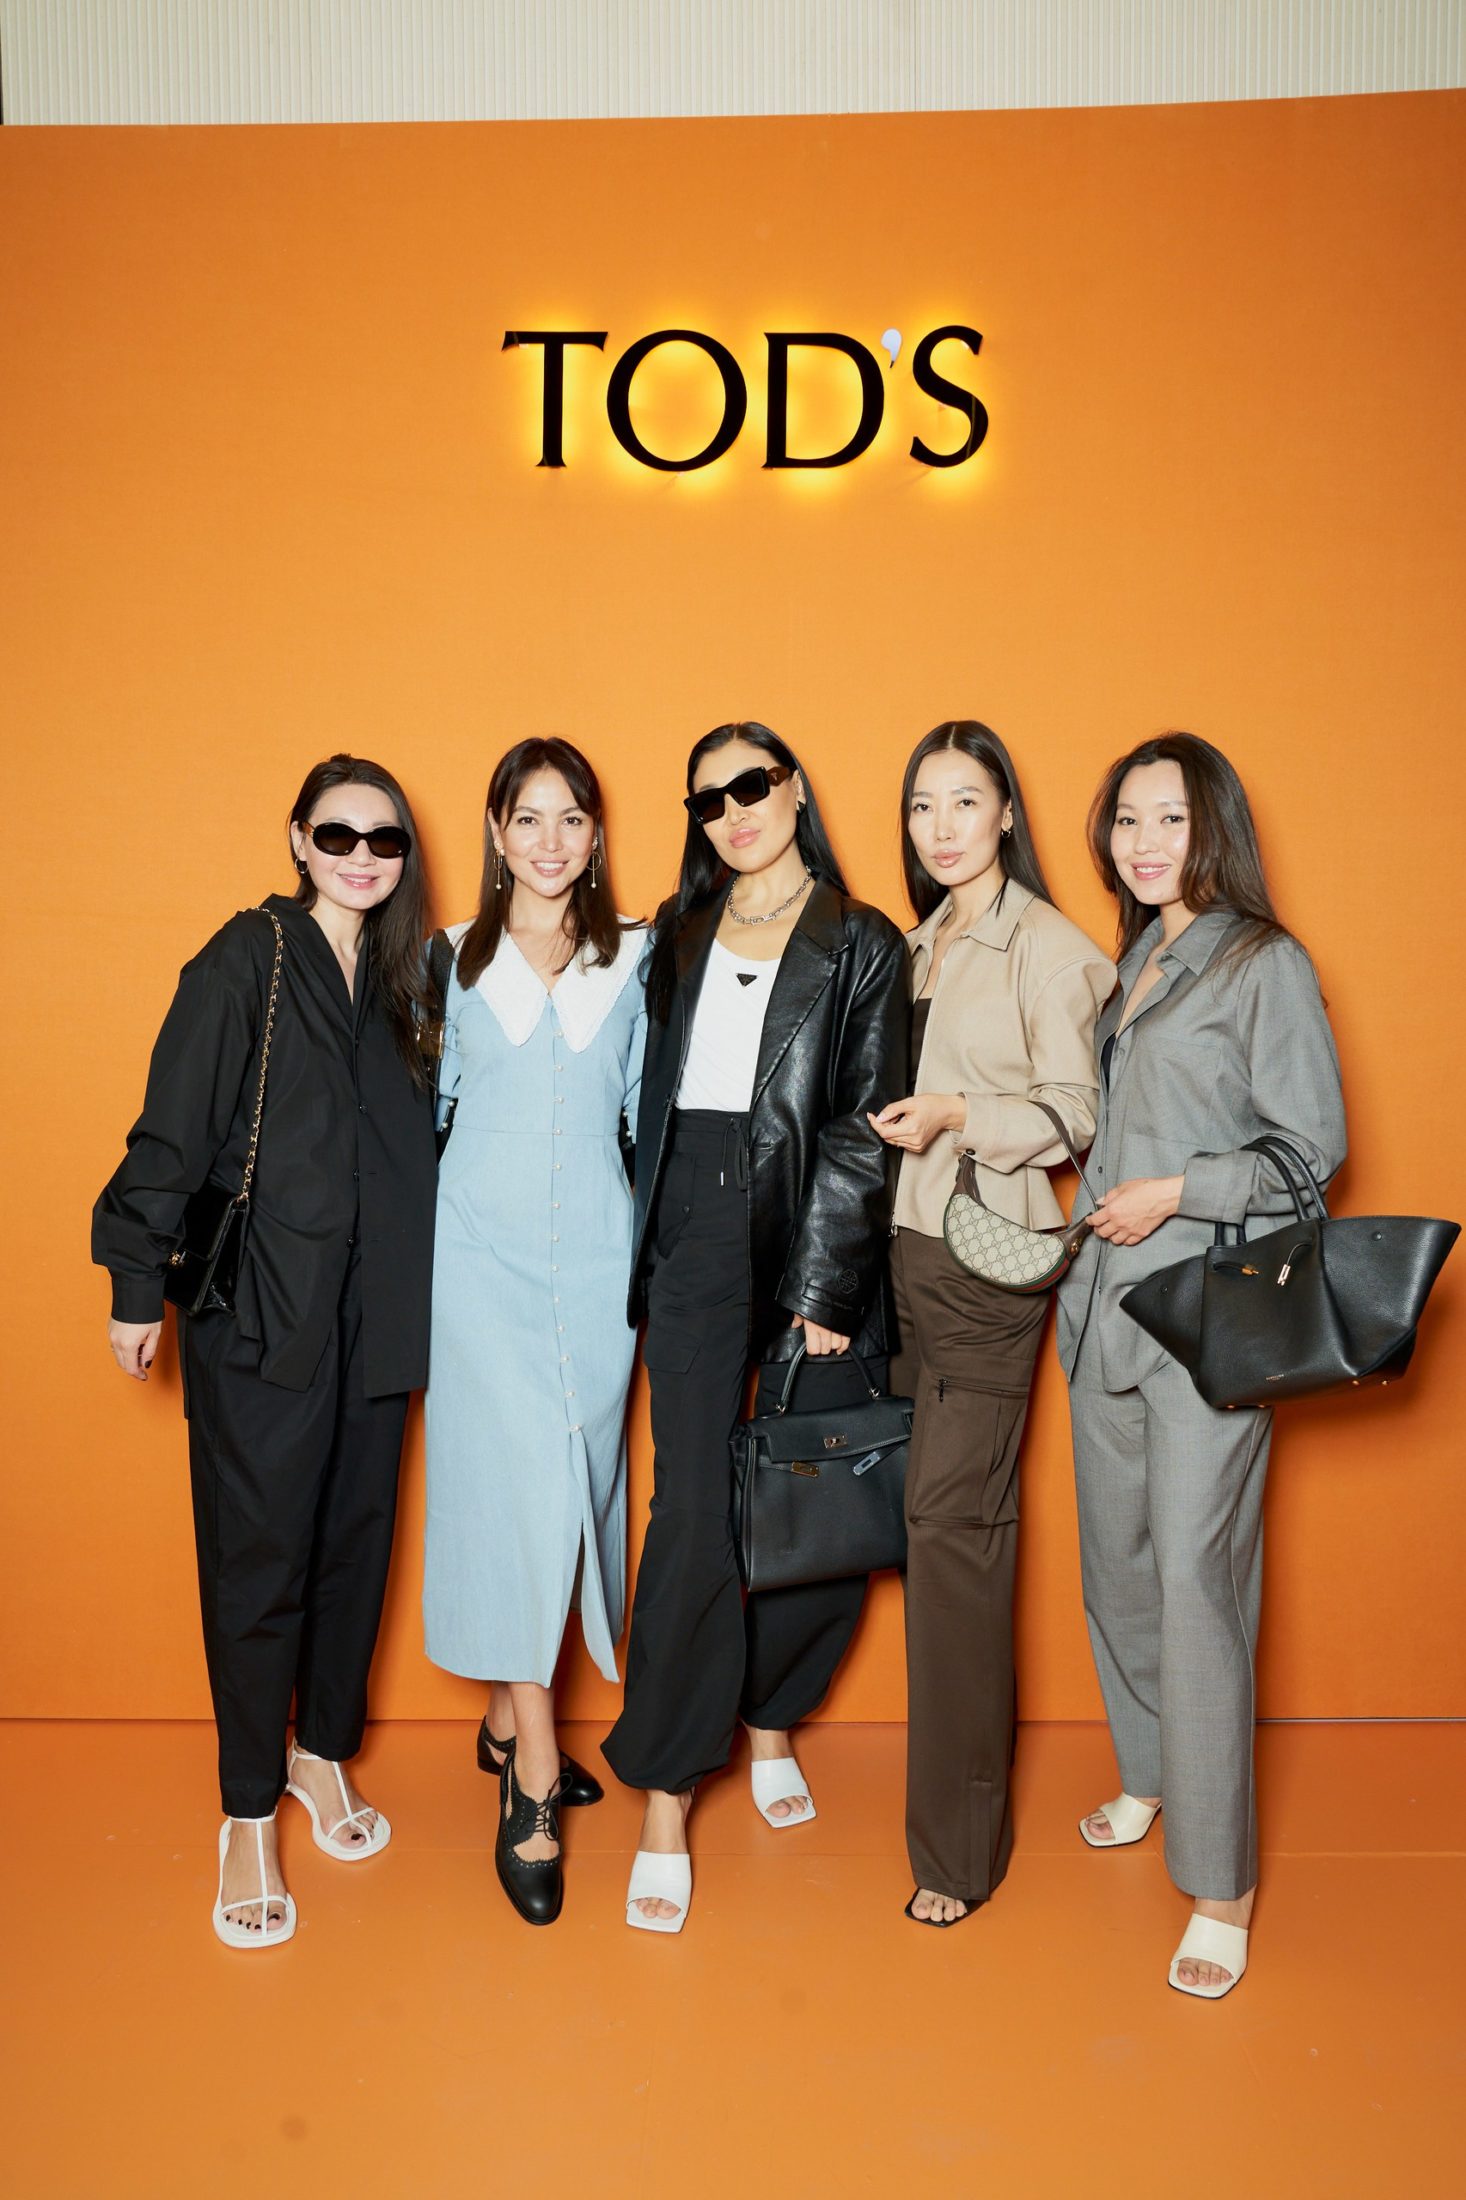 Коллекция одежды Tod’s впервые показана в Казахстане. Как это было?